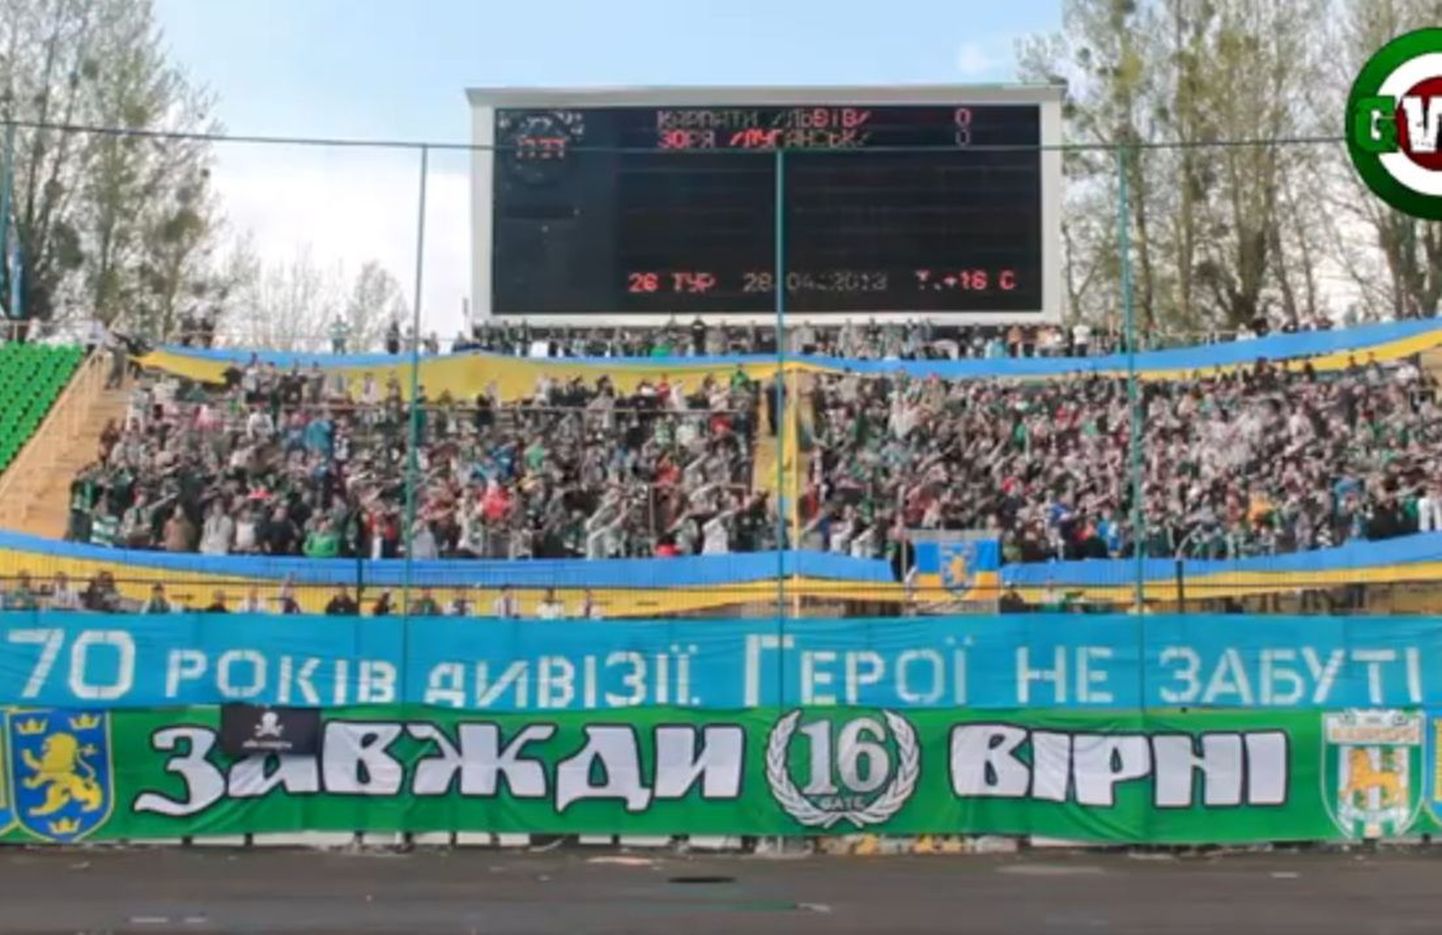 Фанатская трибуна на стадионе во Львове во время матча с "Зарей" 28 апреля.